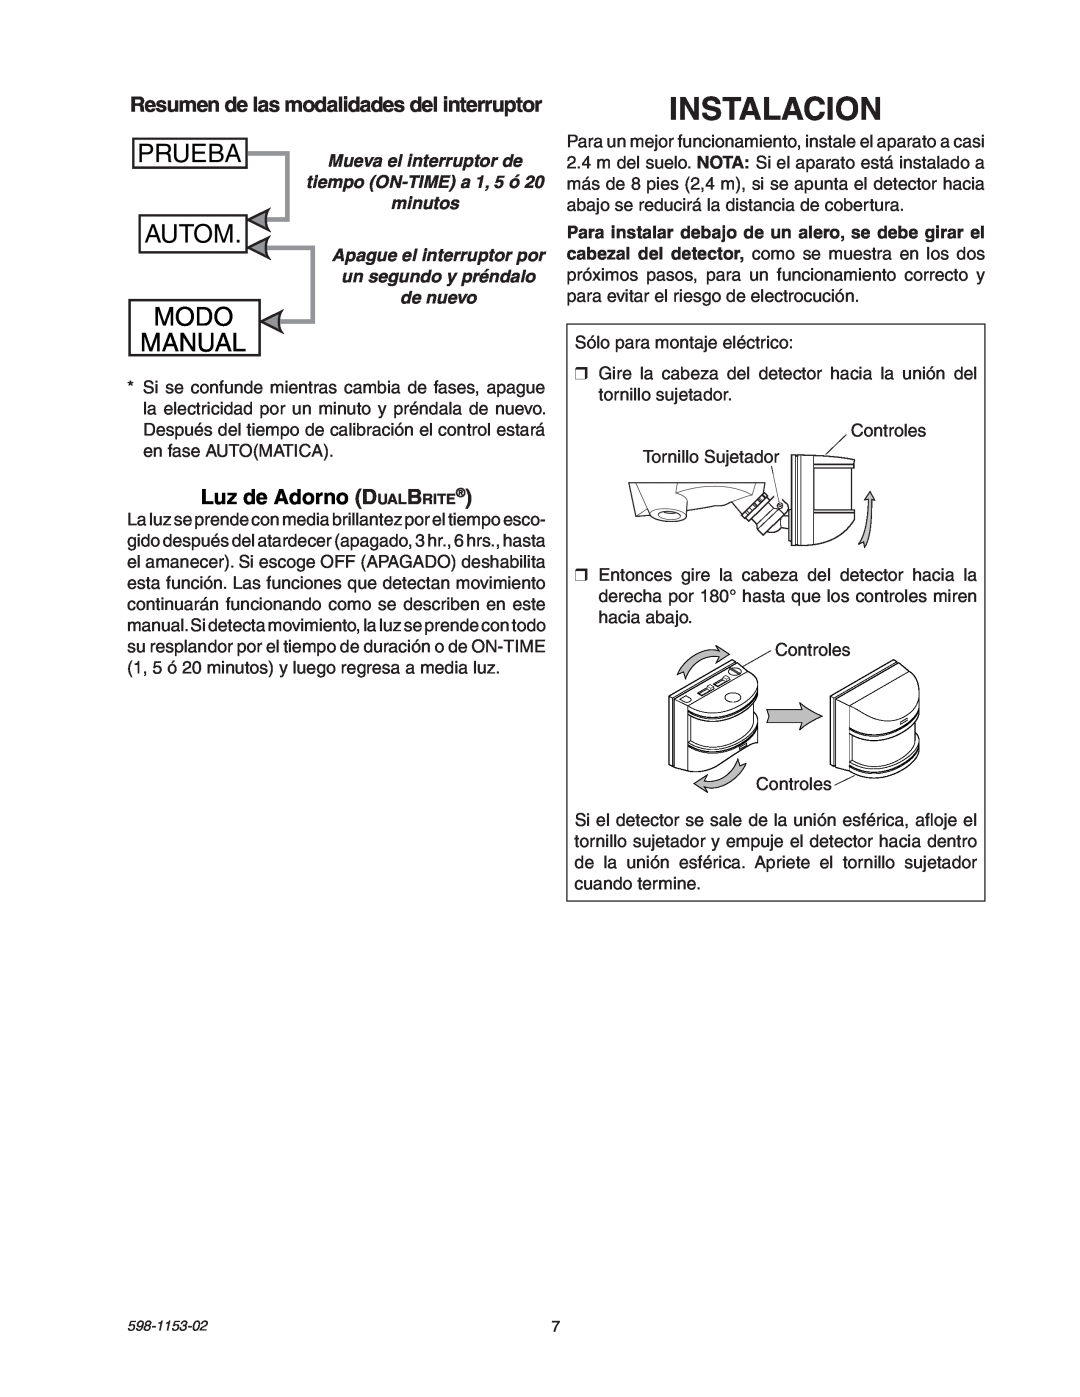 Heath Zenith SH-5316 manual Instalacion, Autom, Modo, Manual, Prueba, Luz de Adorno DualBrite 